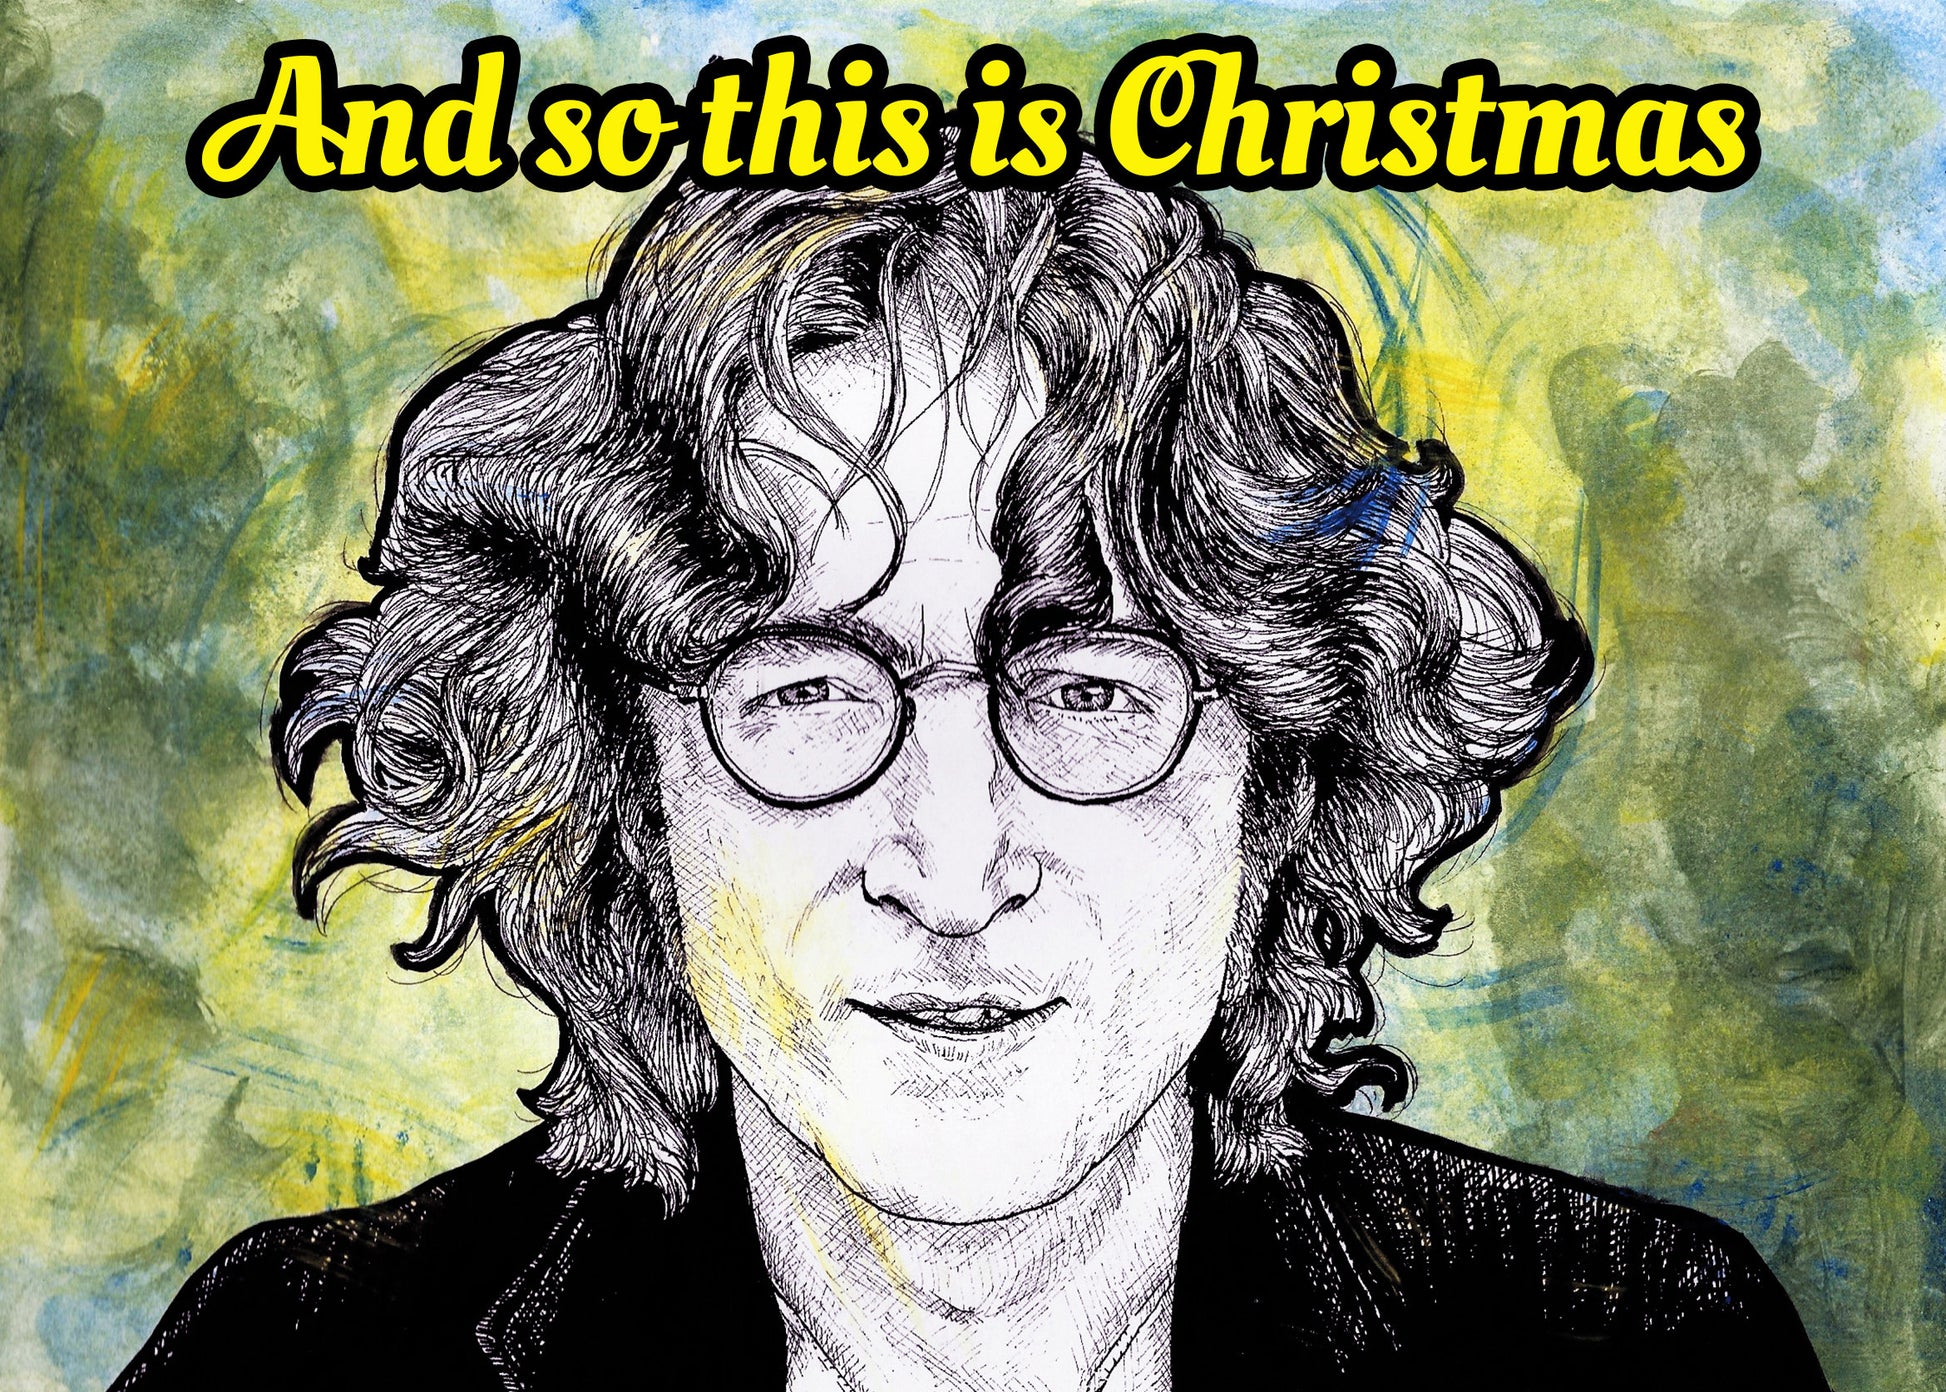 John Lennon Christmas card, The Beatles Christmas card, music Christmas card, personalised card, gift for John Lennon fan